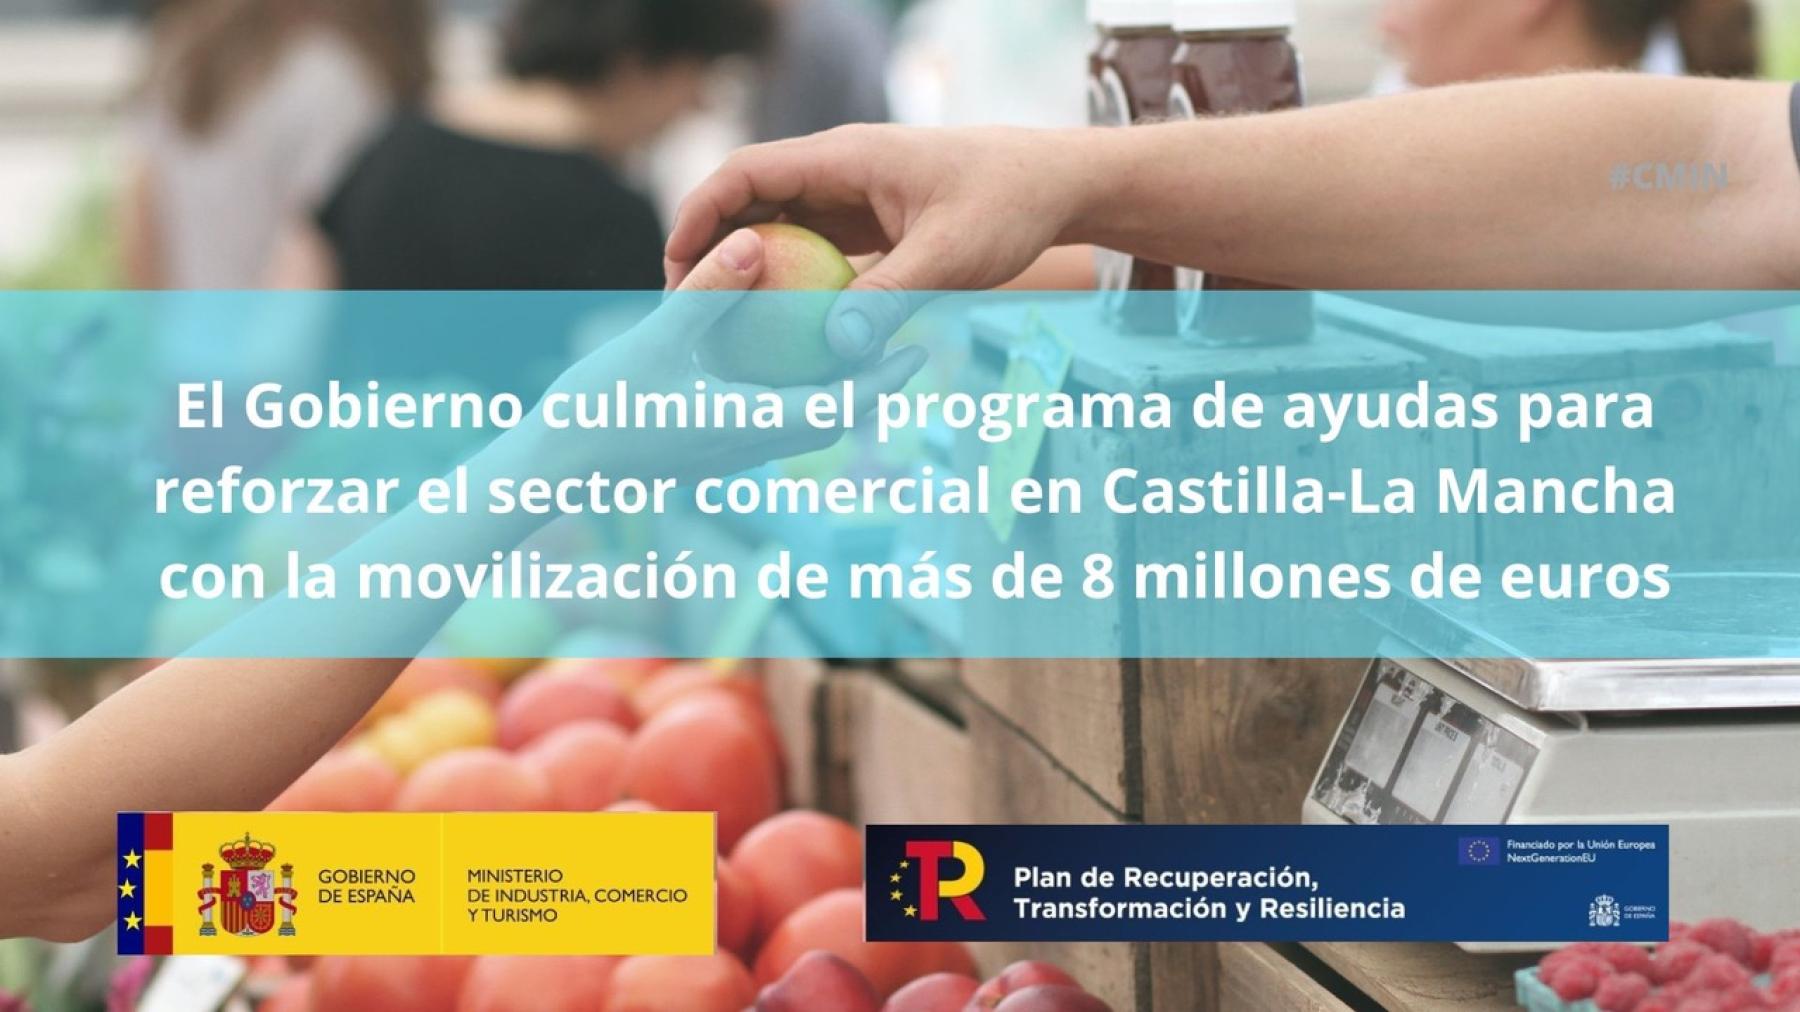 El Gobierno culmina el programa de ayudas para reforzar el sector comercial en Castilla-La Mancha con la movilización de más de 8 millones de euros